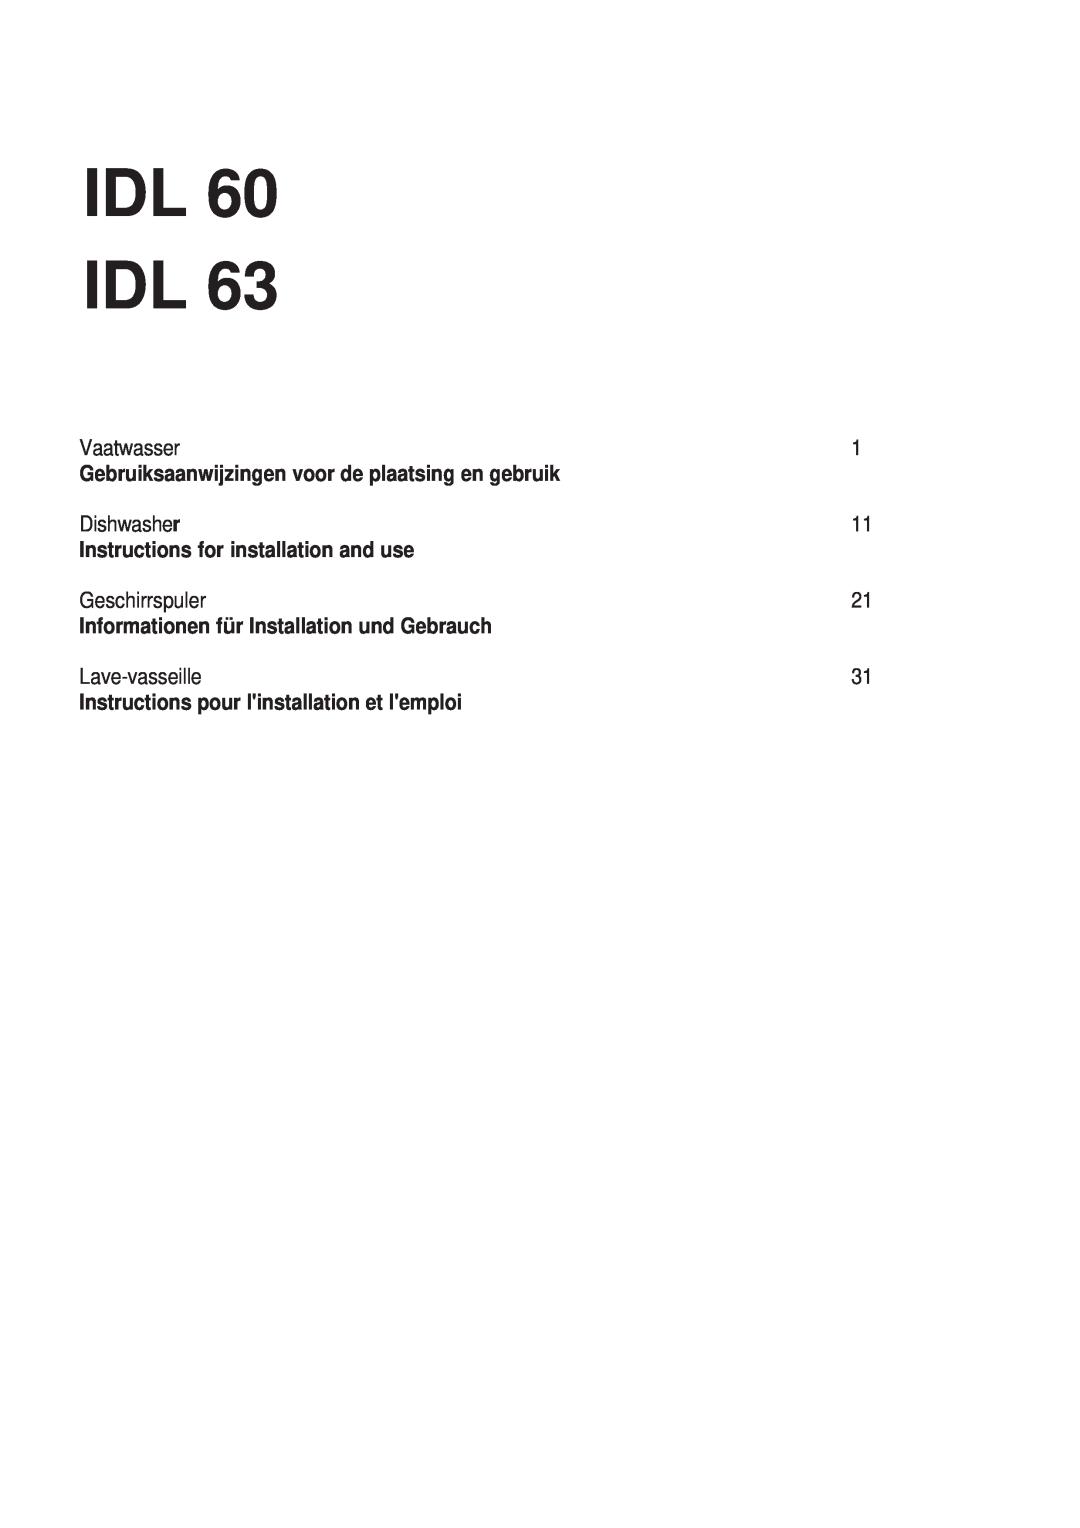 Indesit IDL 63 manual Gebruiksaanwijzingen voor de plaatsing en gebruik, Instructions for installation and use, Idl Idl 